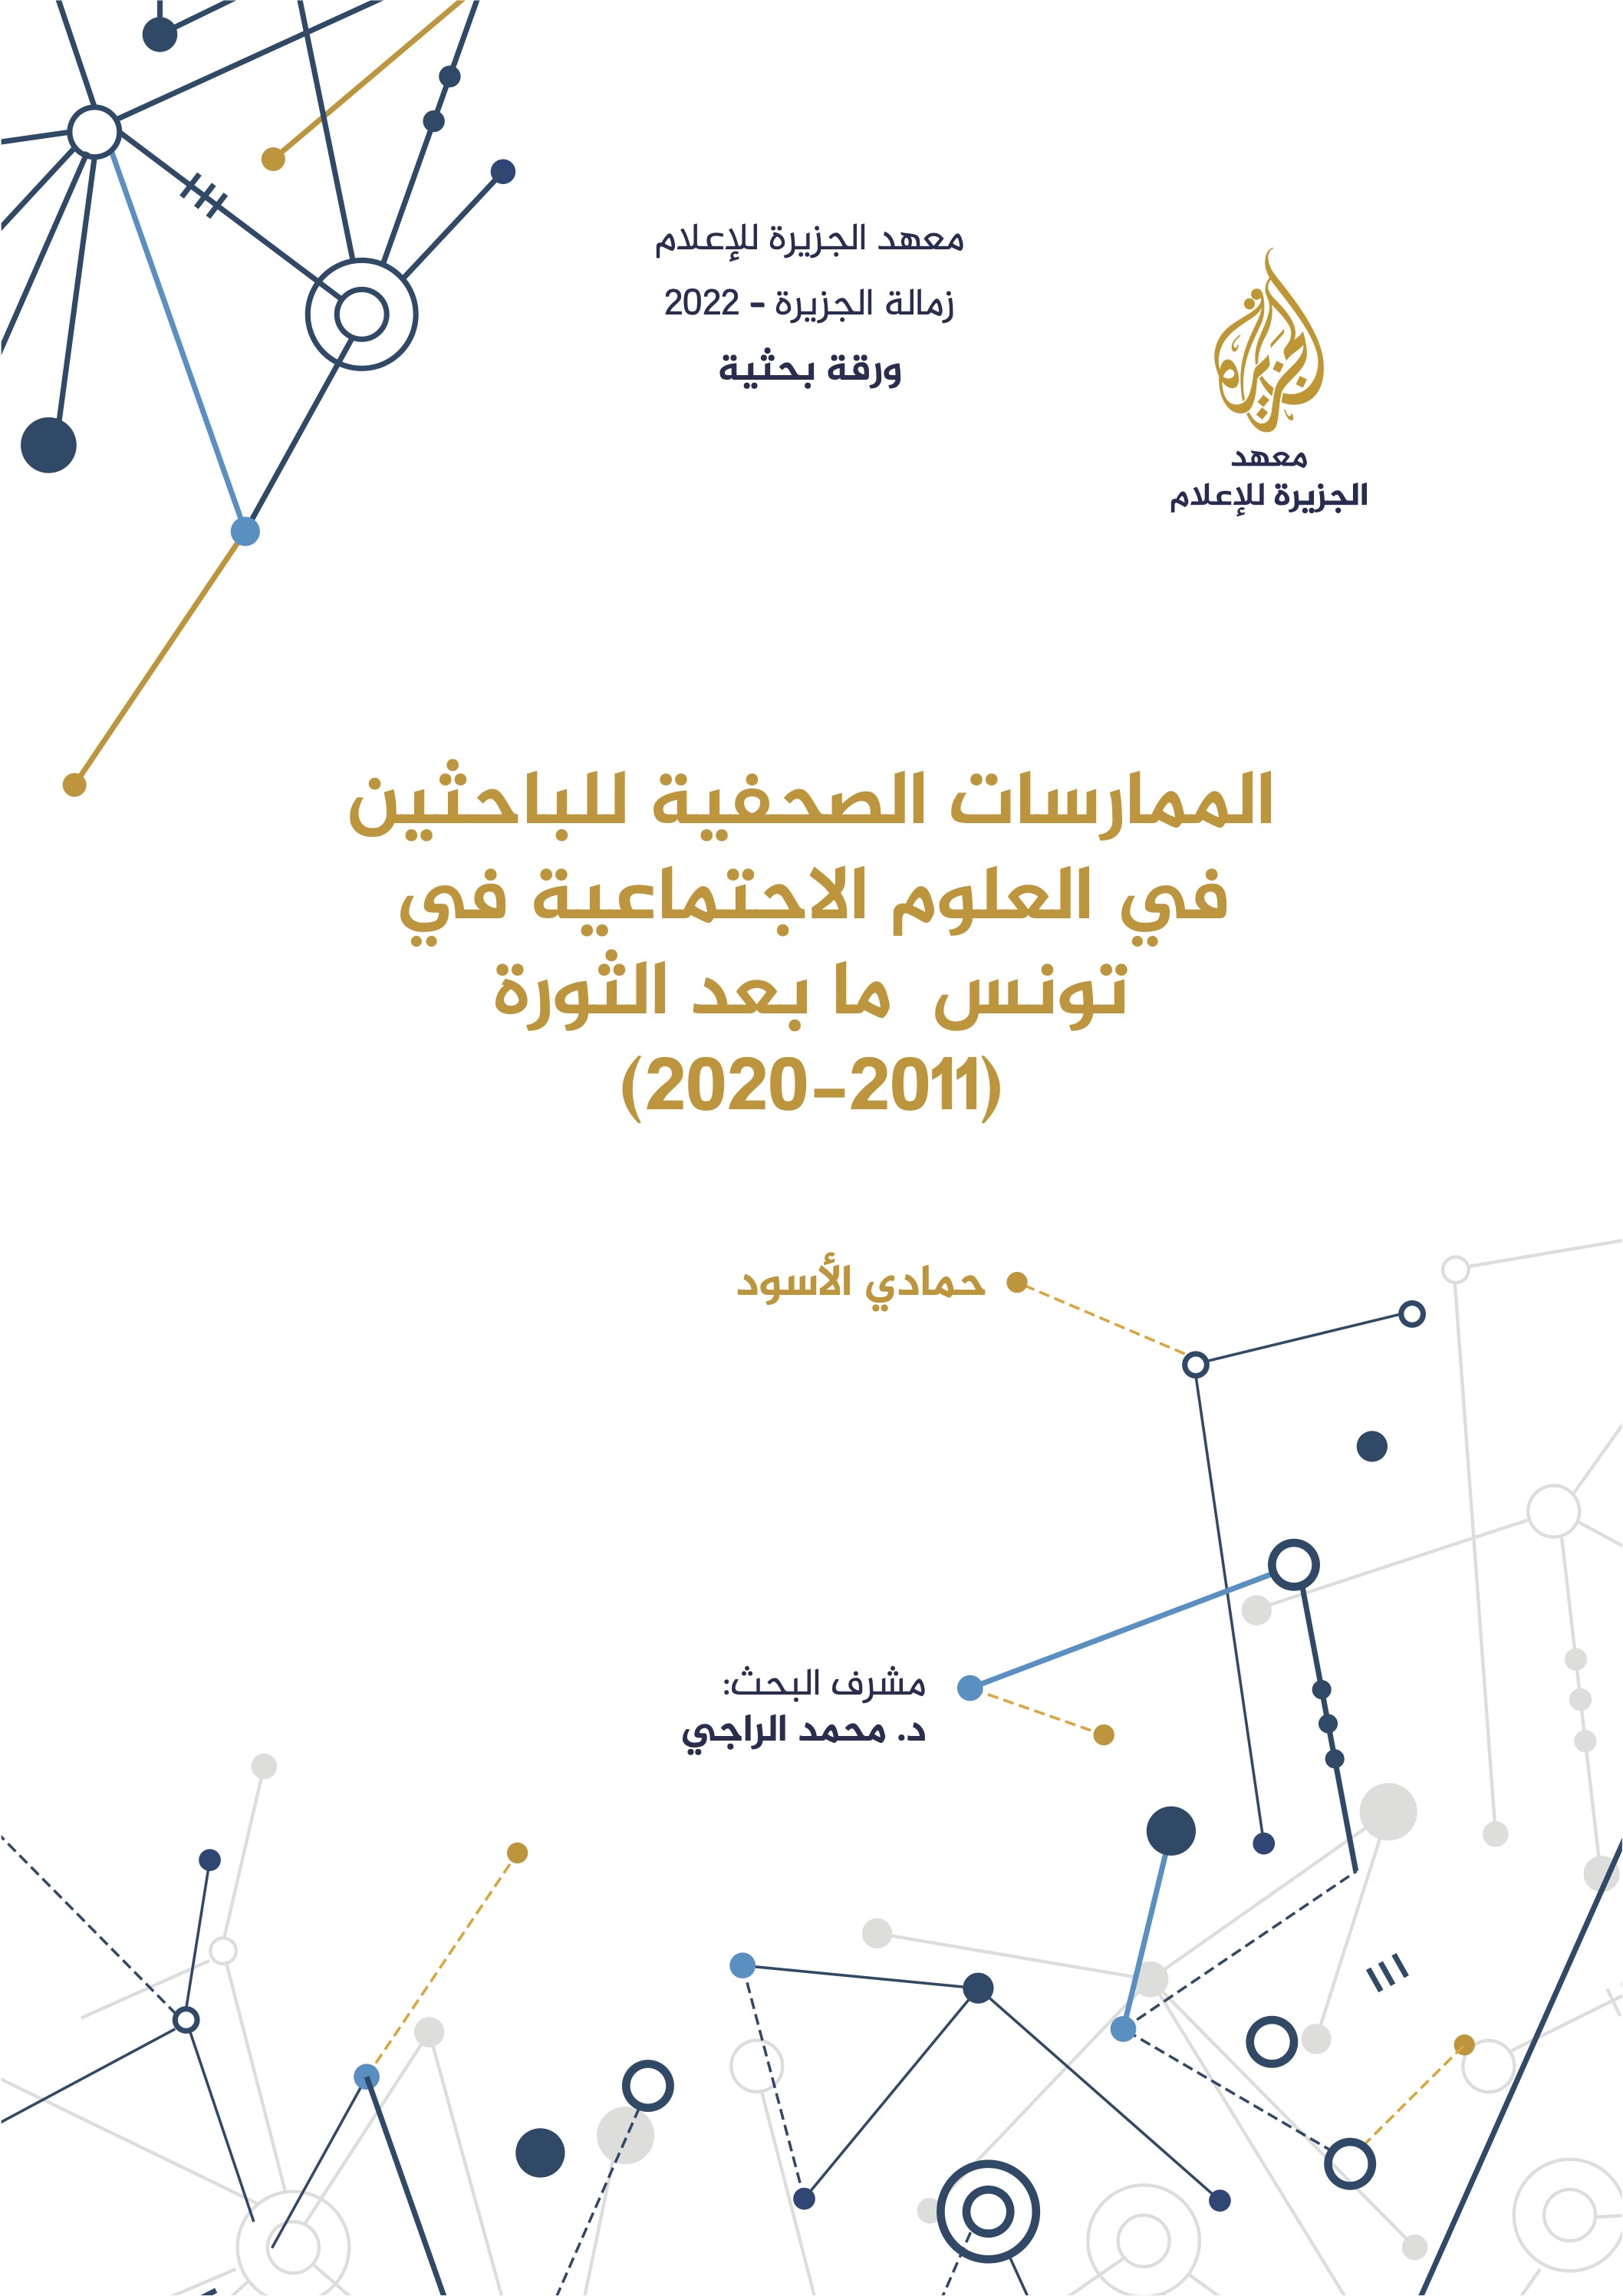 الممارسات الصحفية للباحثين في العلوم الاجتماعية في تونس ما بعد الثورة (2011-2020)